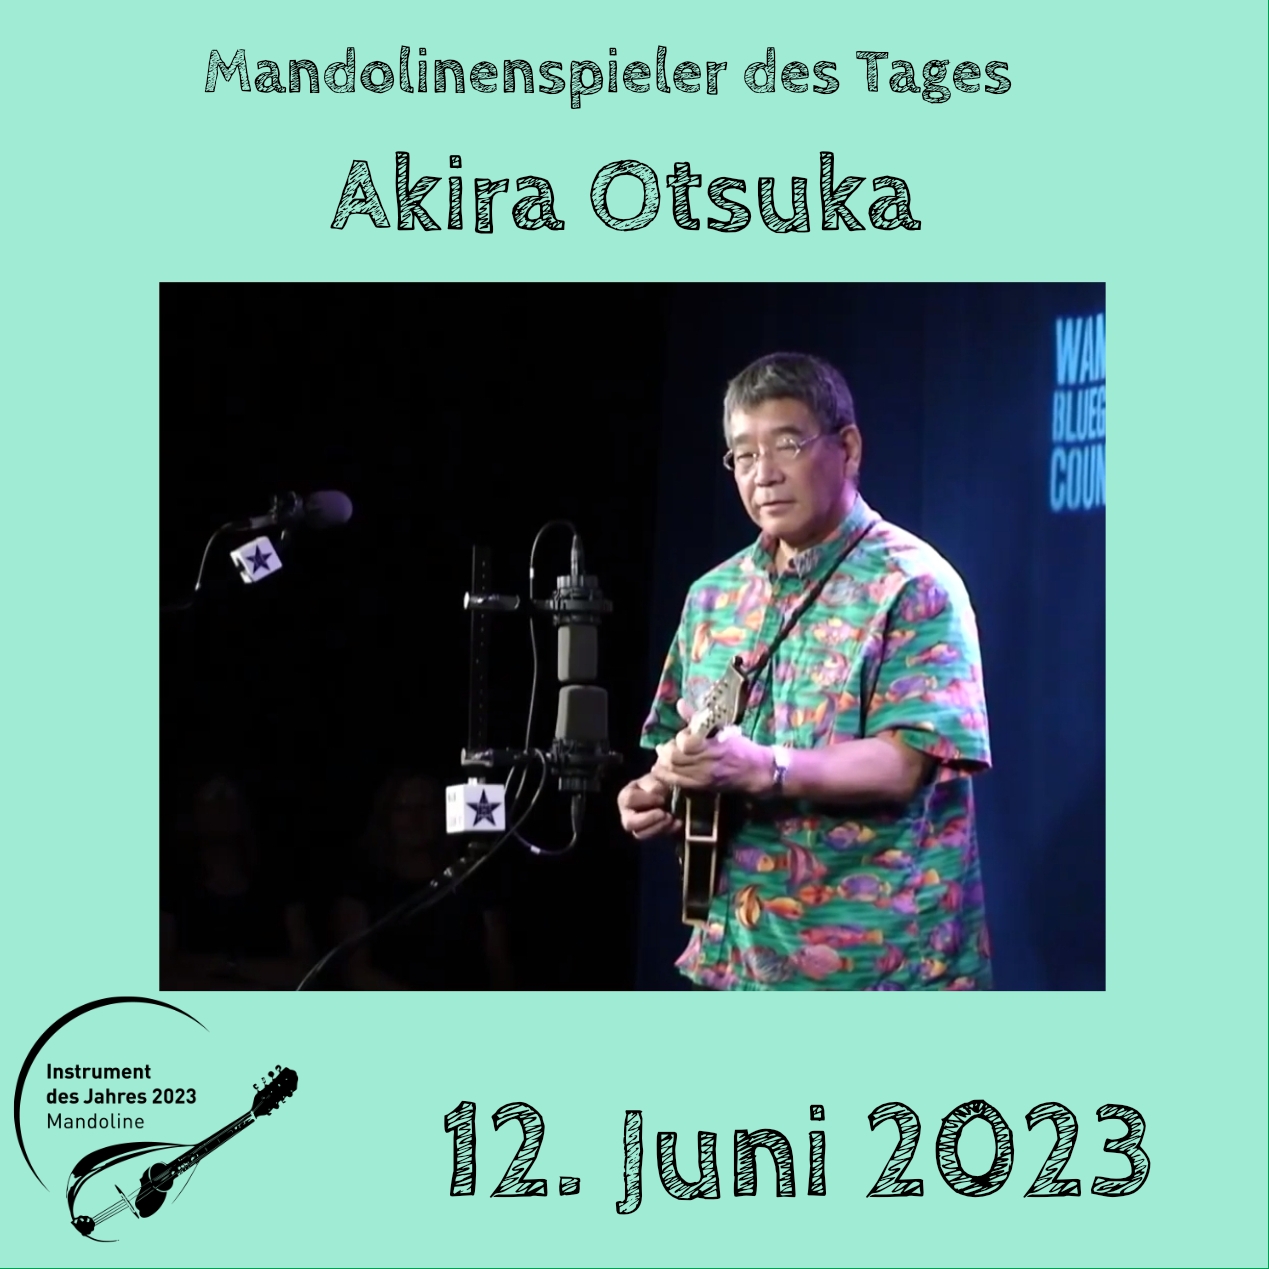 12. Juni - Akira Otsuka Mandoline Instrument des Jahres 2023 Mandolinenspieler Mandolinenspielerin des Tages